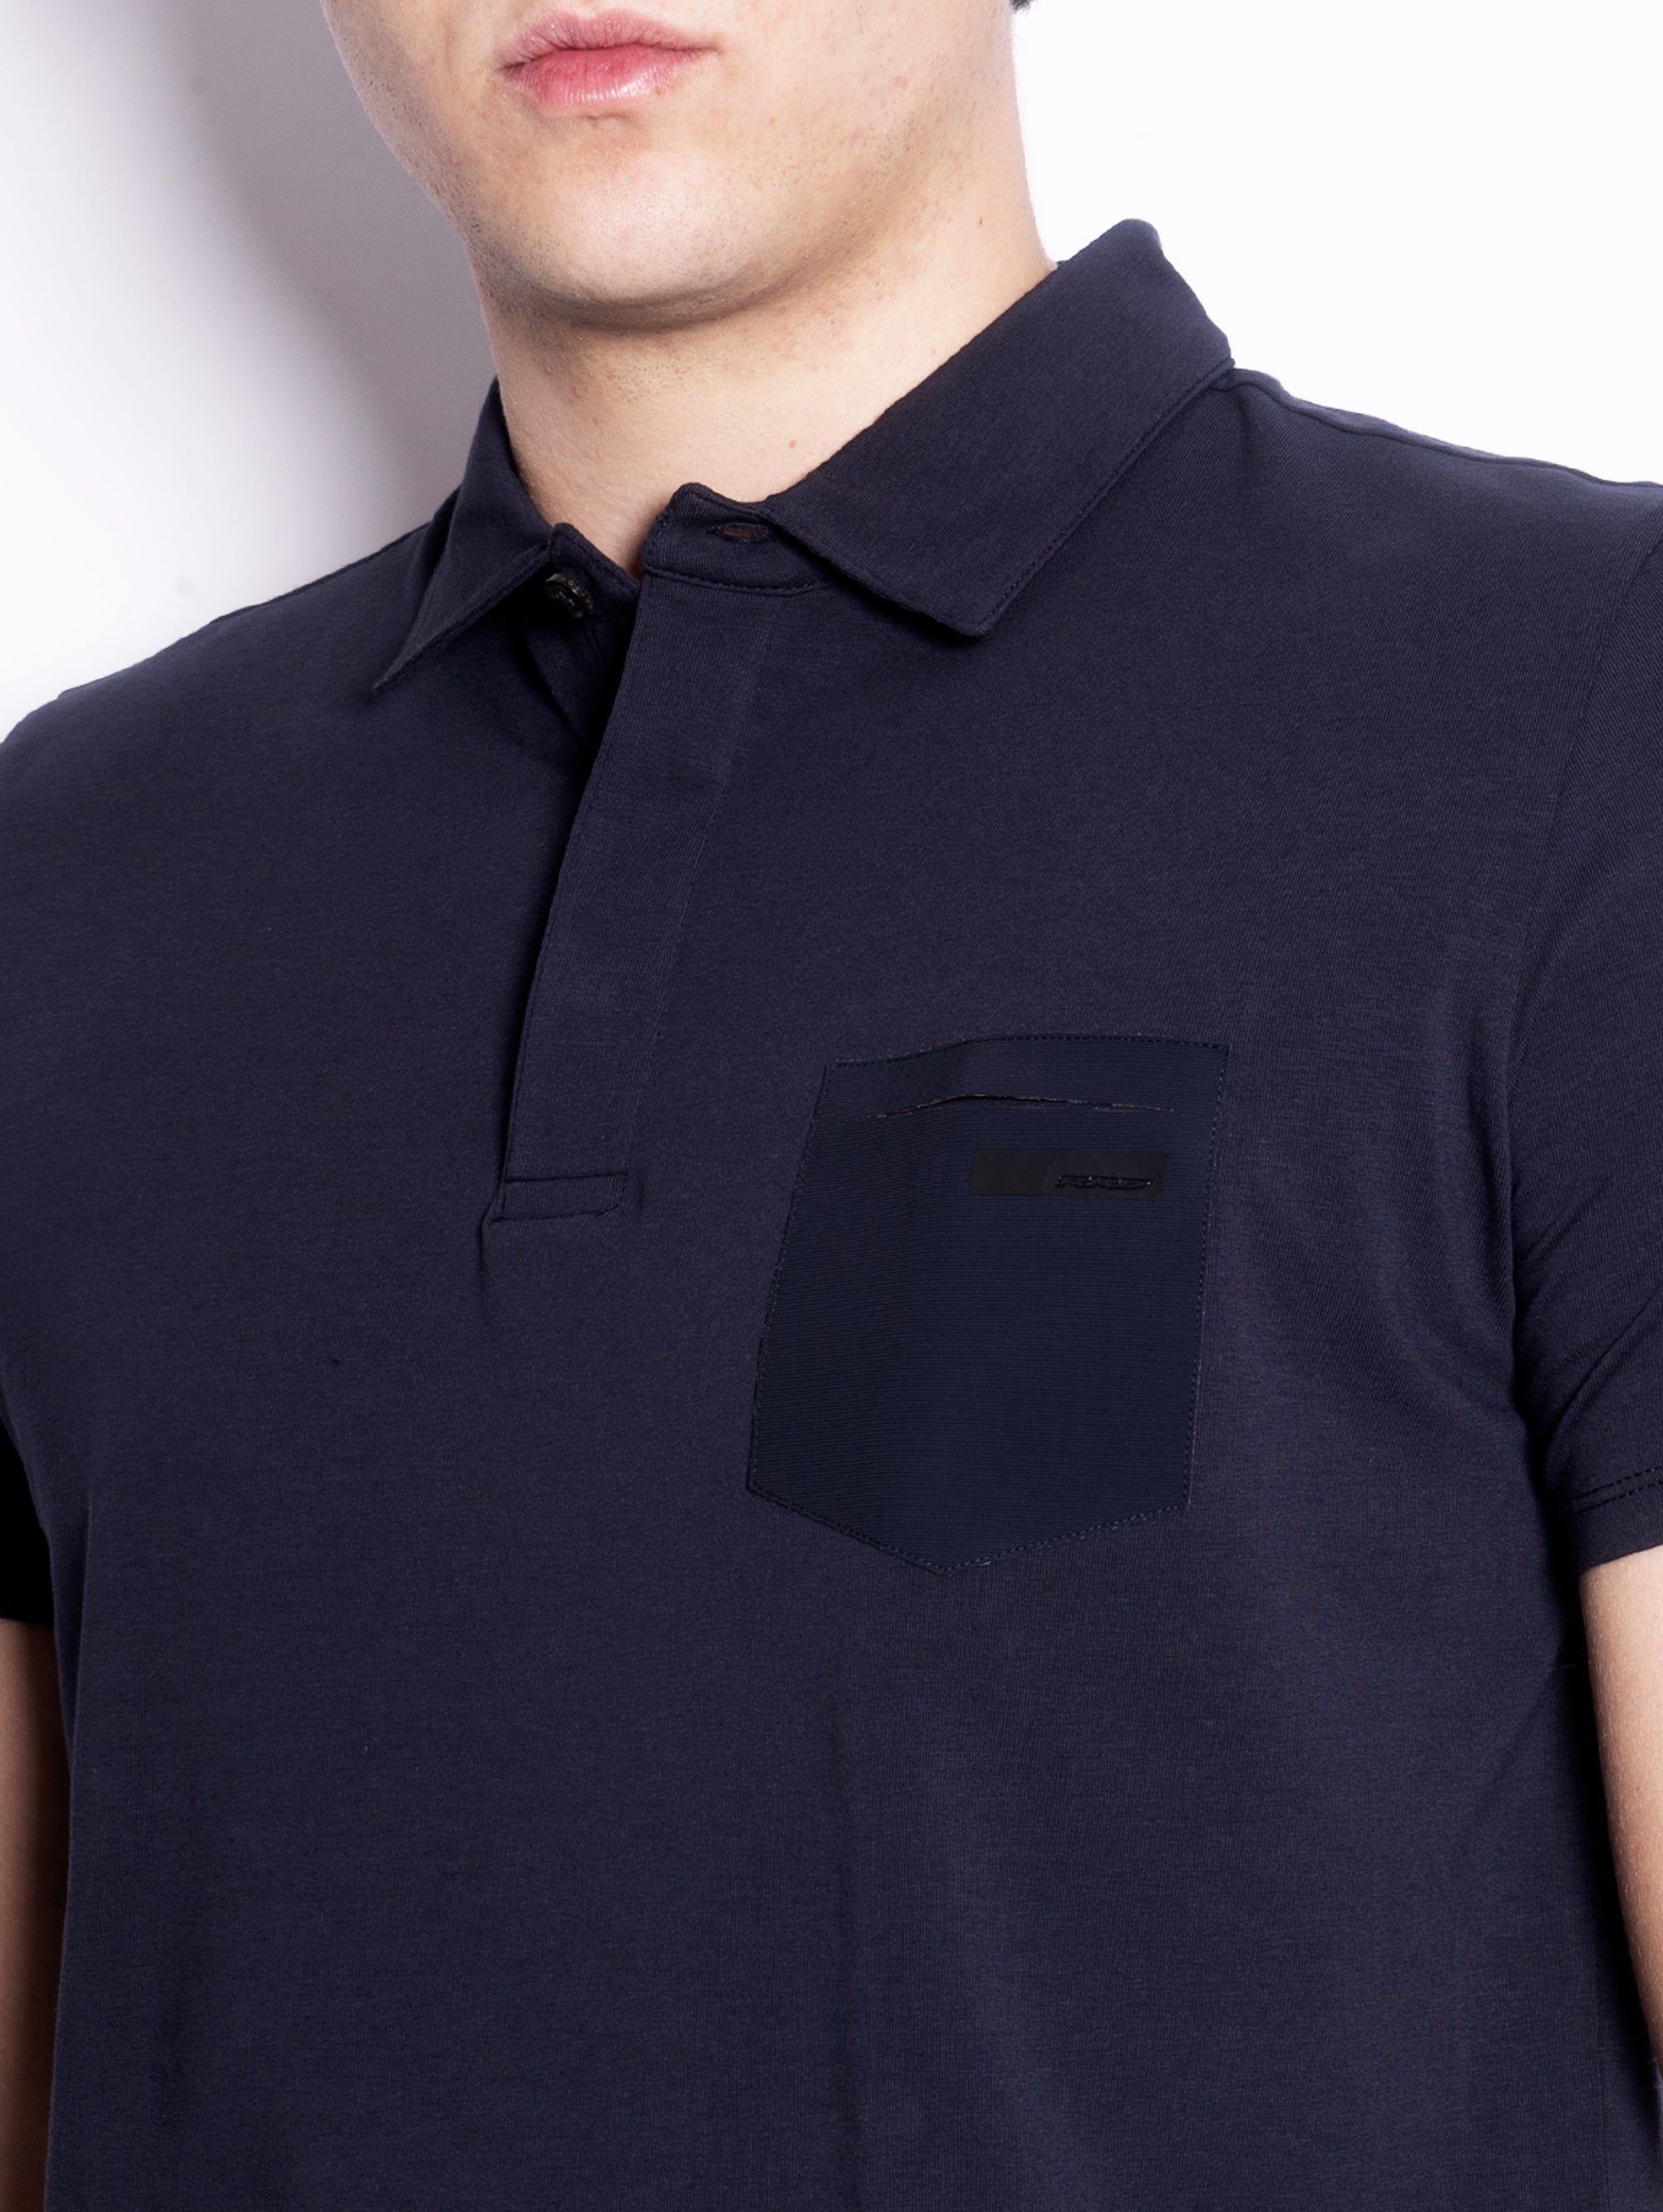 Poloshirt aus nachtblauem technischem Stoff